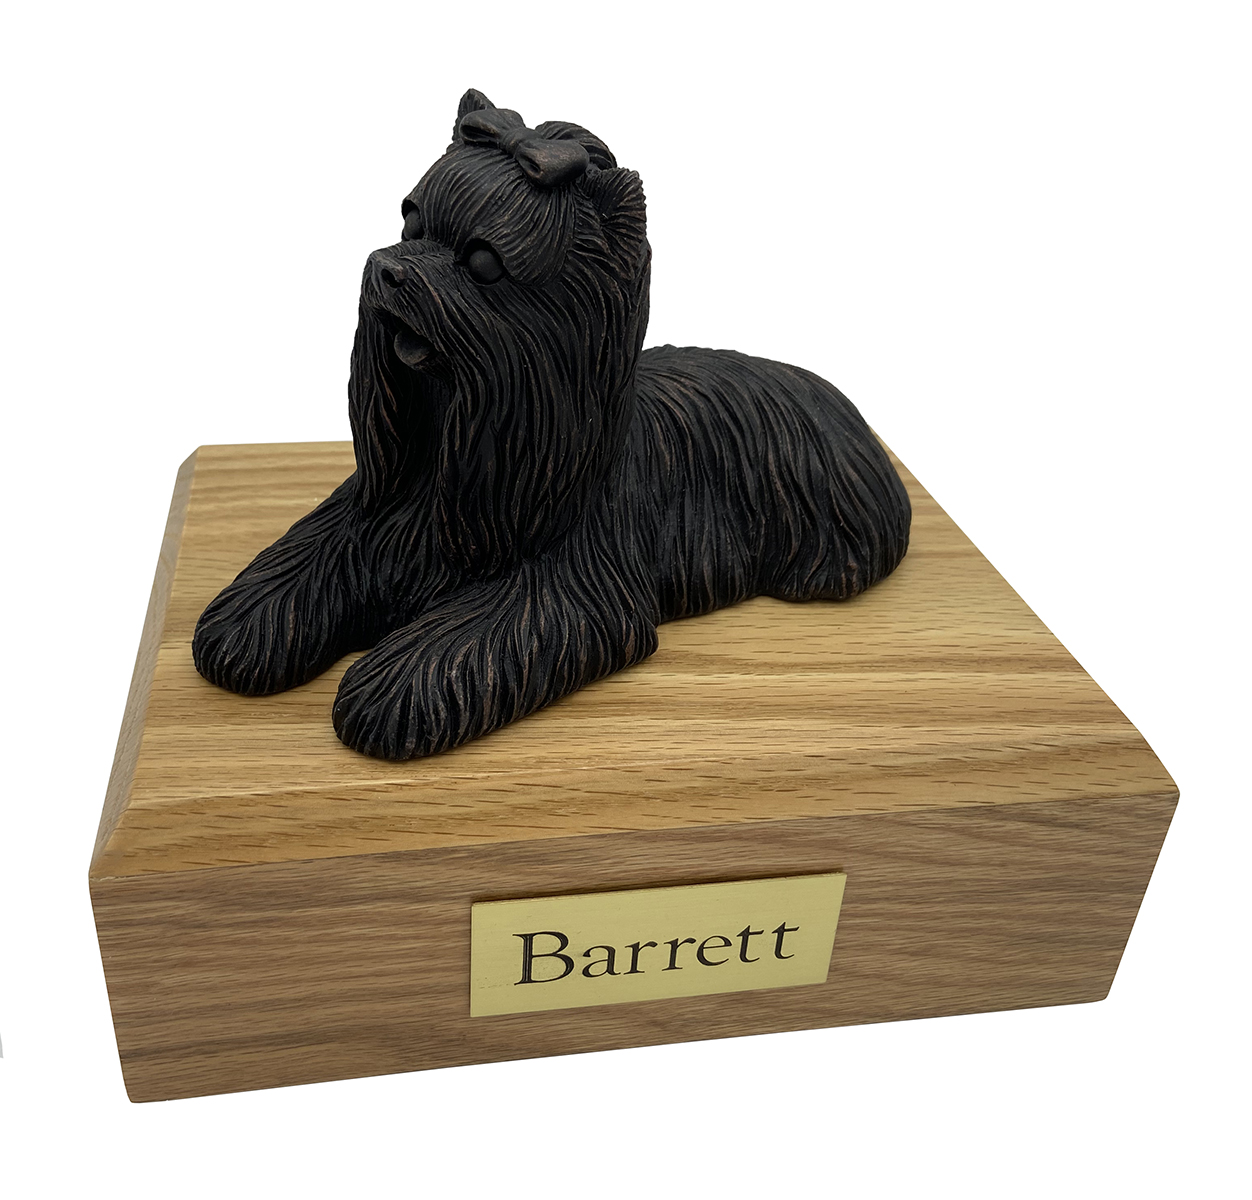 Dog, Yorkshire Terrier, Bronze - Figurine Urn